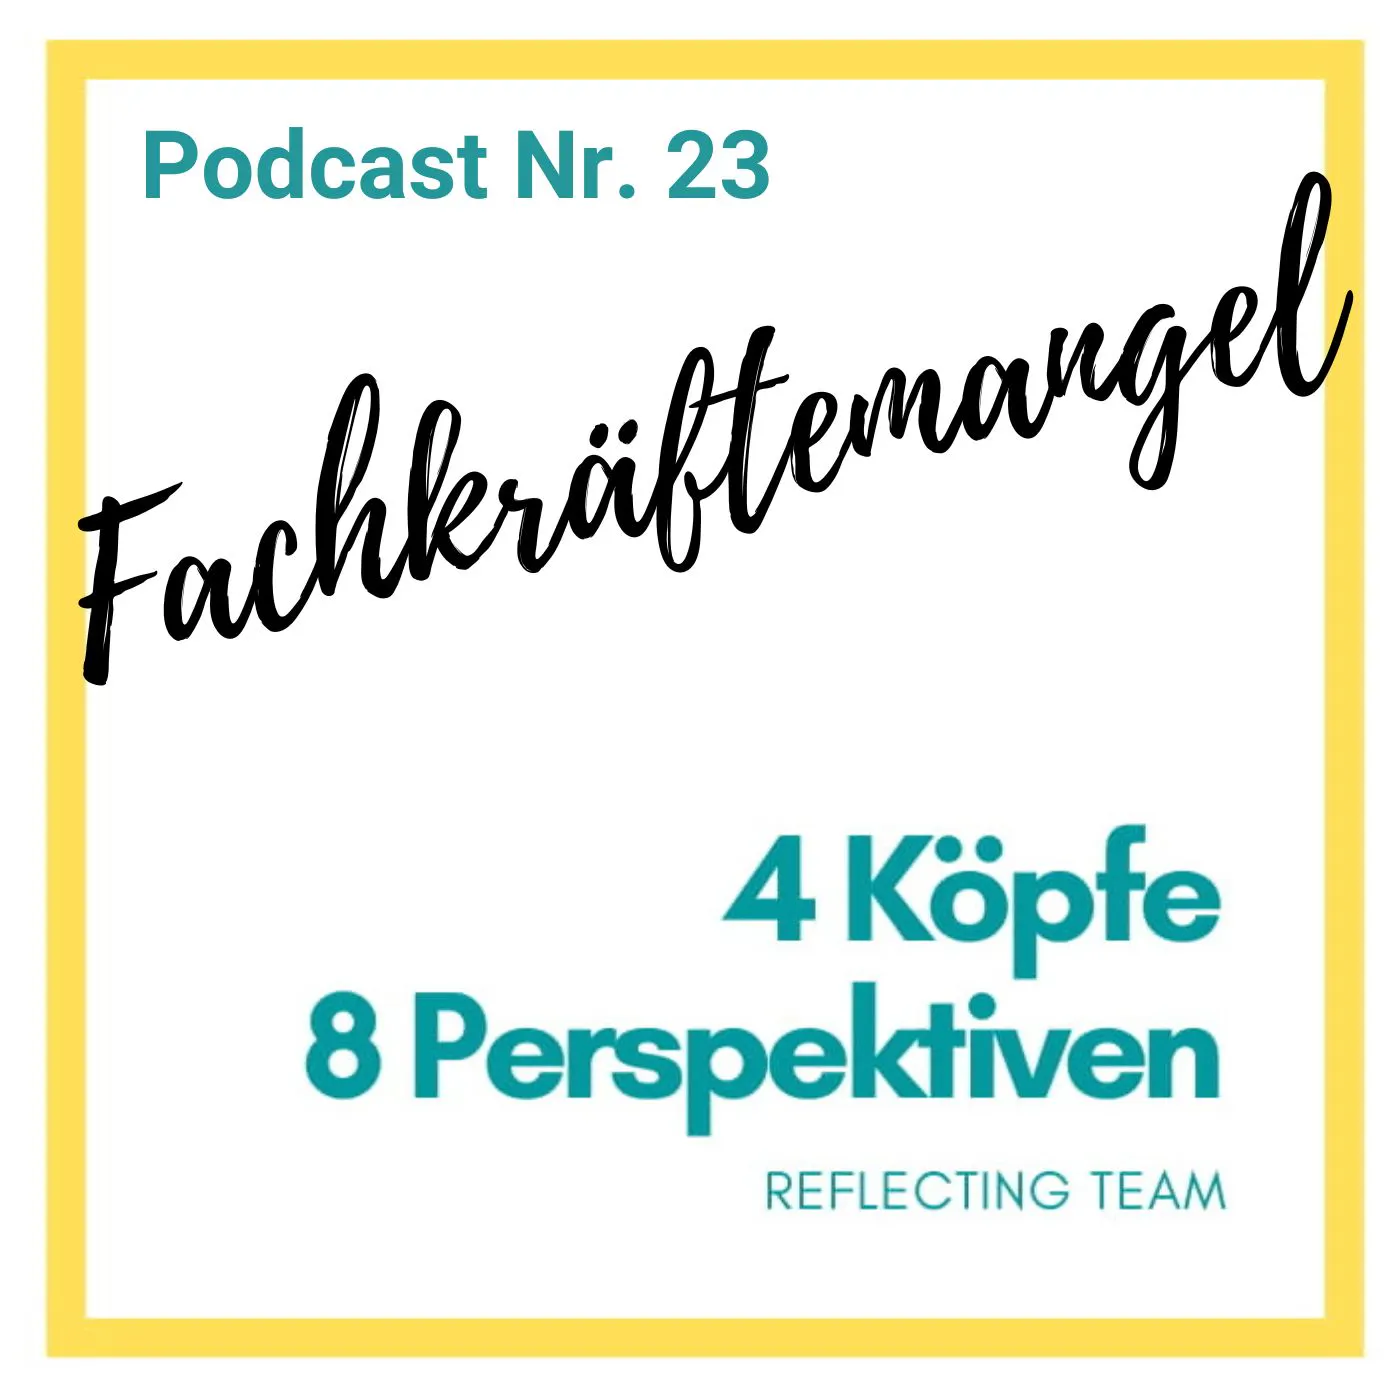 Podcast Nr. 23. Fachkräftemangel.
4 Köpfe, 8 Perspektiven. 
Reflecting Team